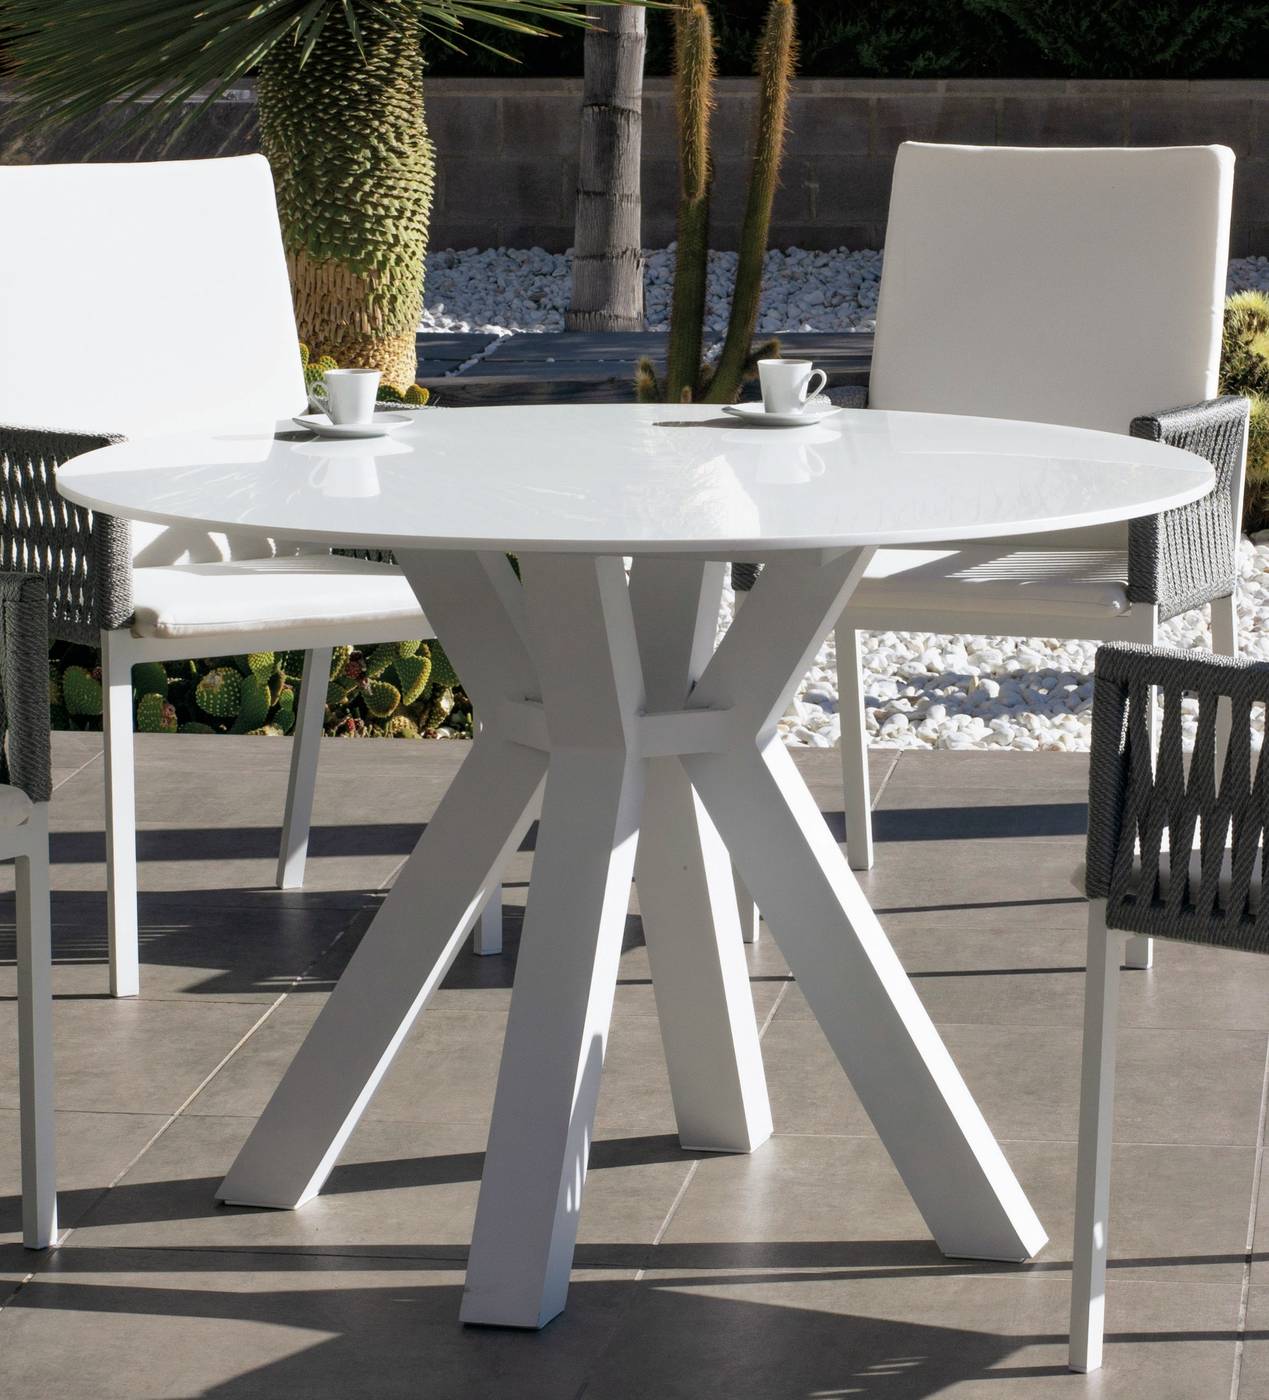 Mesa lujo circular de 120 cm, con tablero de Krion de calidad superior. Estructura robusta de aluminio color blanco.